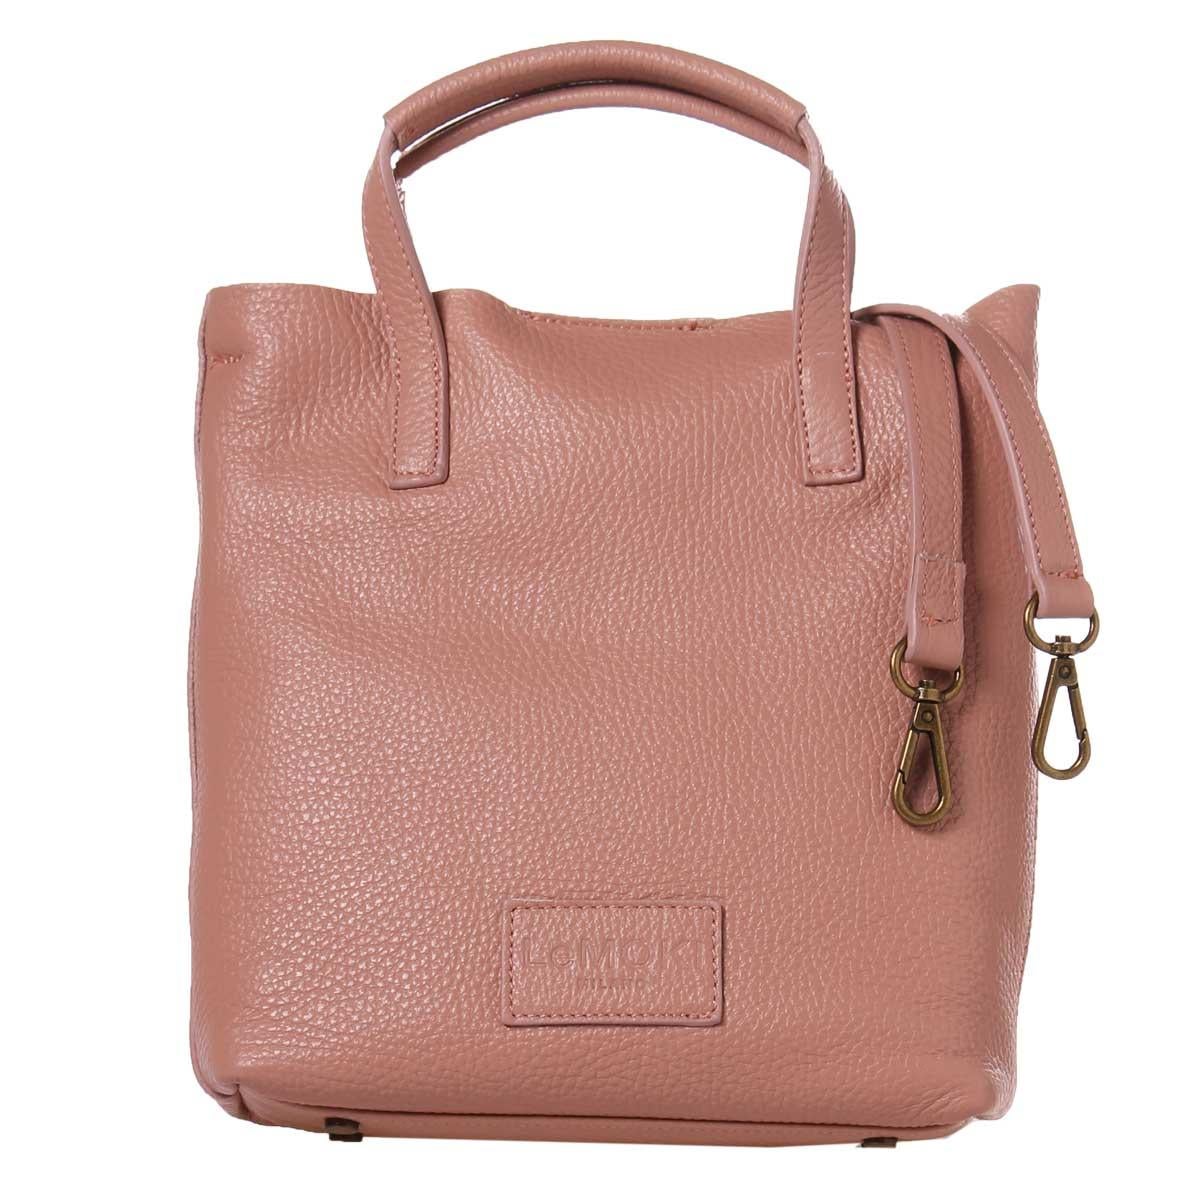 Pink leather handbag shoulder bag NWOT 1